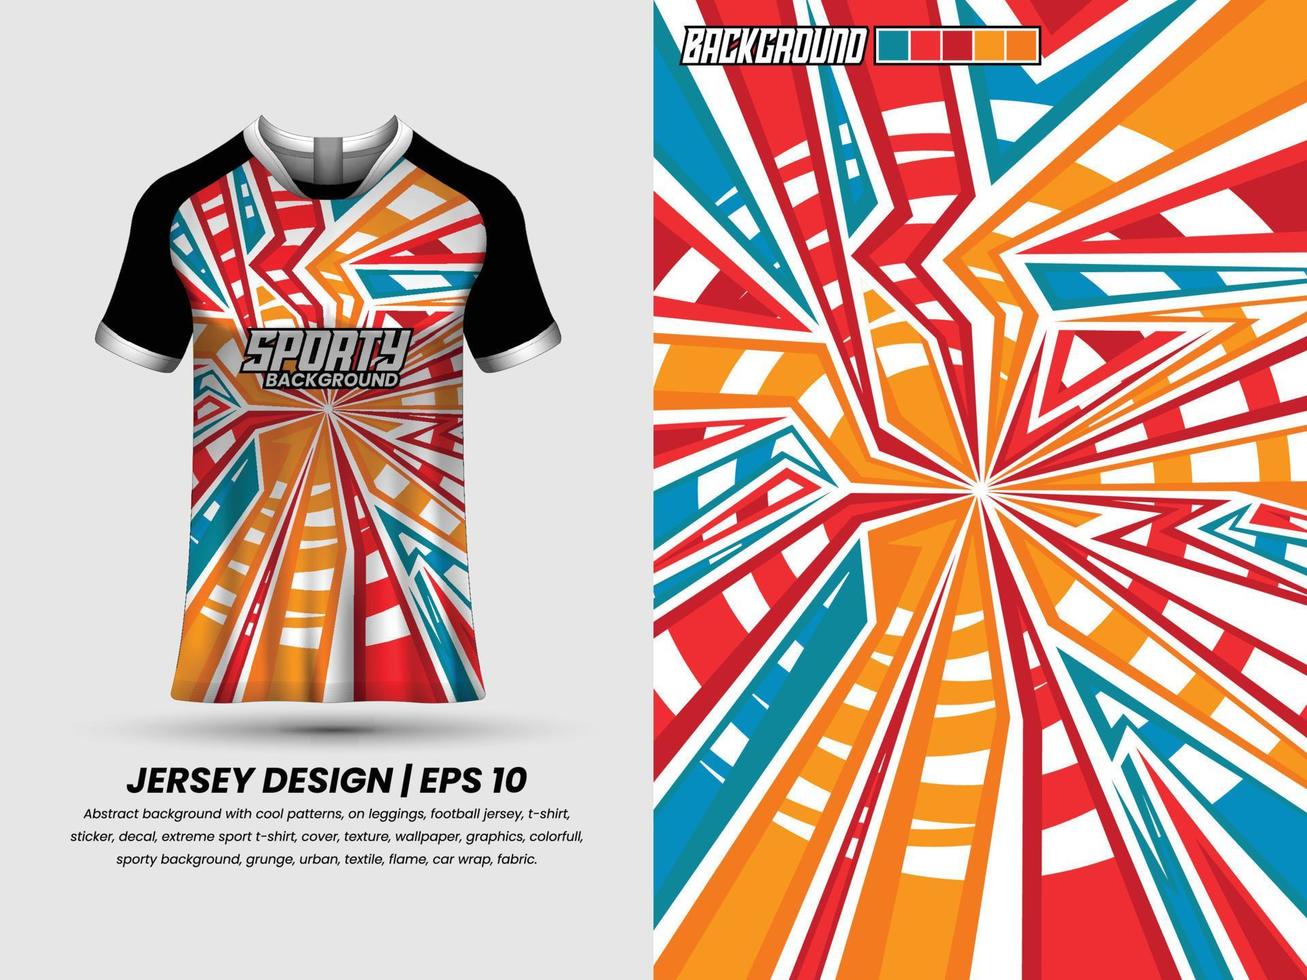 diseño de camisetas de fútbol para sublimación, diseño de camisetas deportivas, camiseta de plantilla vector